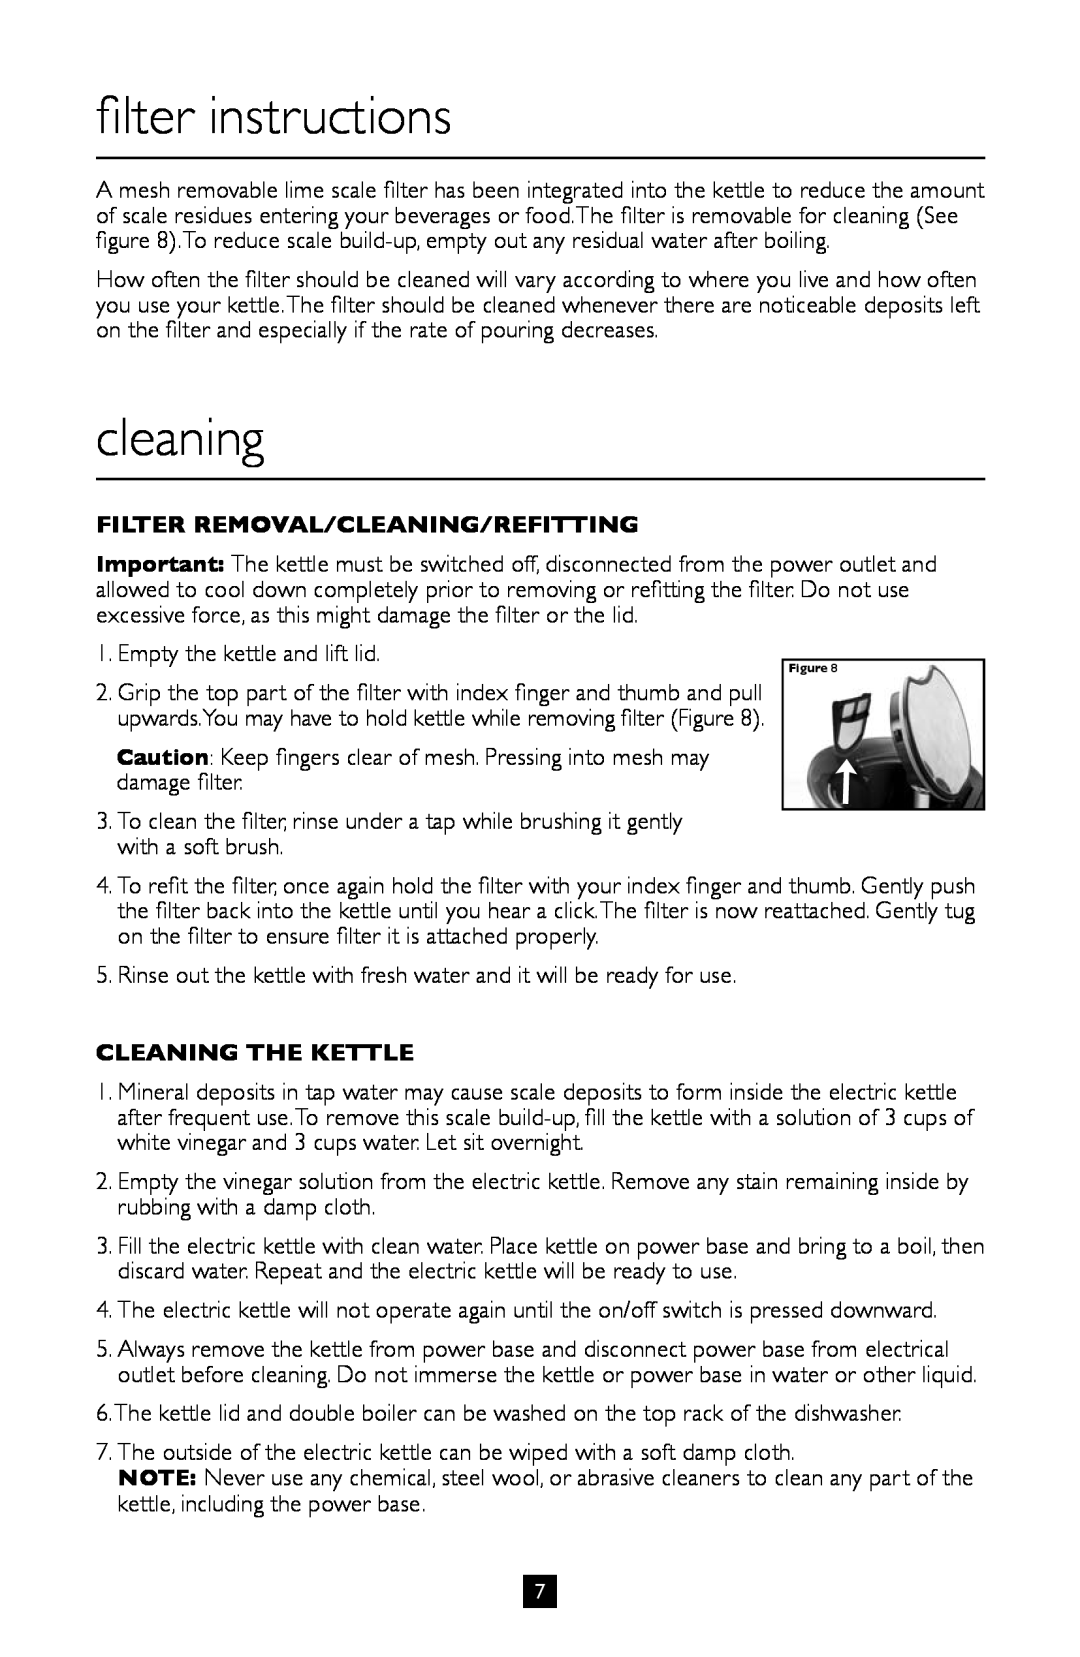 Villaware BVVLKTSL01 filter instructions, cleaning, Filter Removal/Cleaning/Refitting, Cleaning The Kettle 